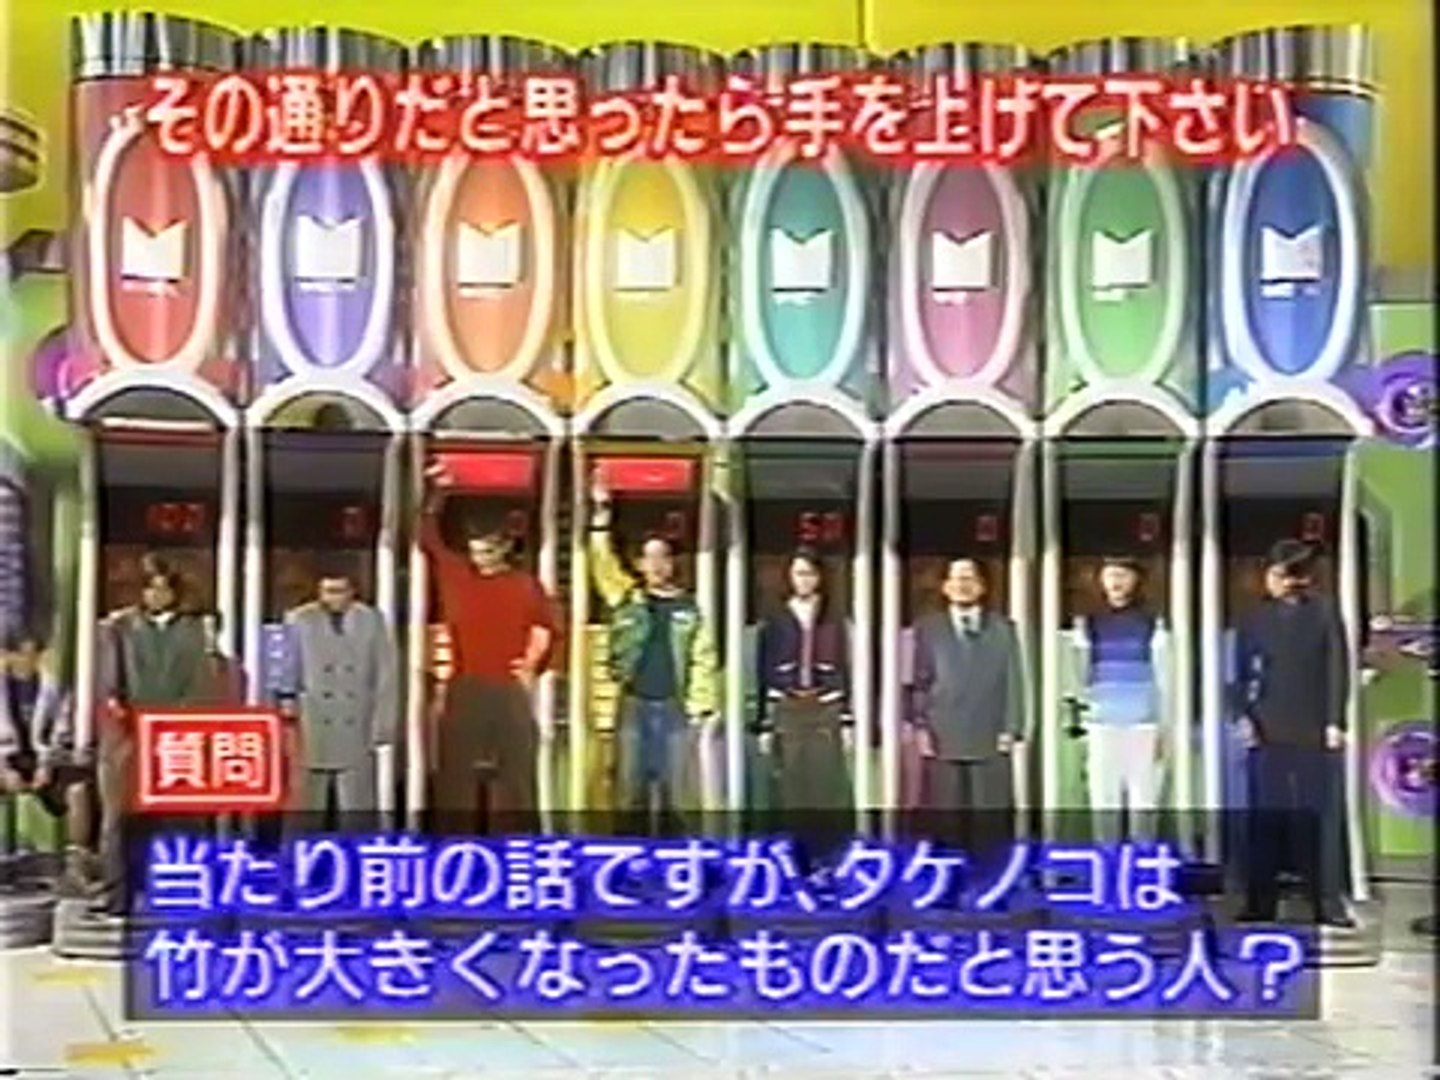 マジカル頭脳パワー 1996年12月5日放送 Video Dailymotion